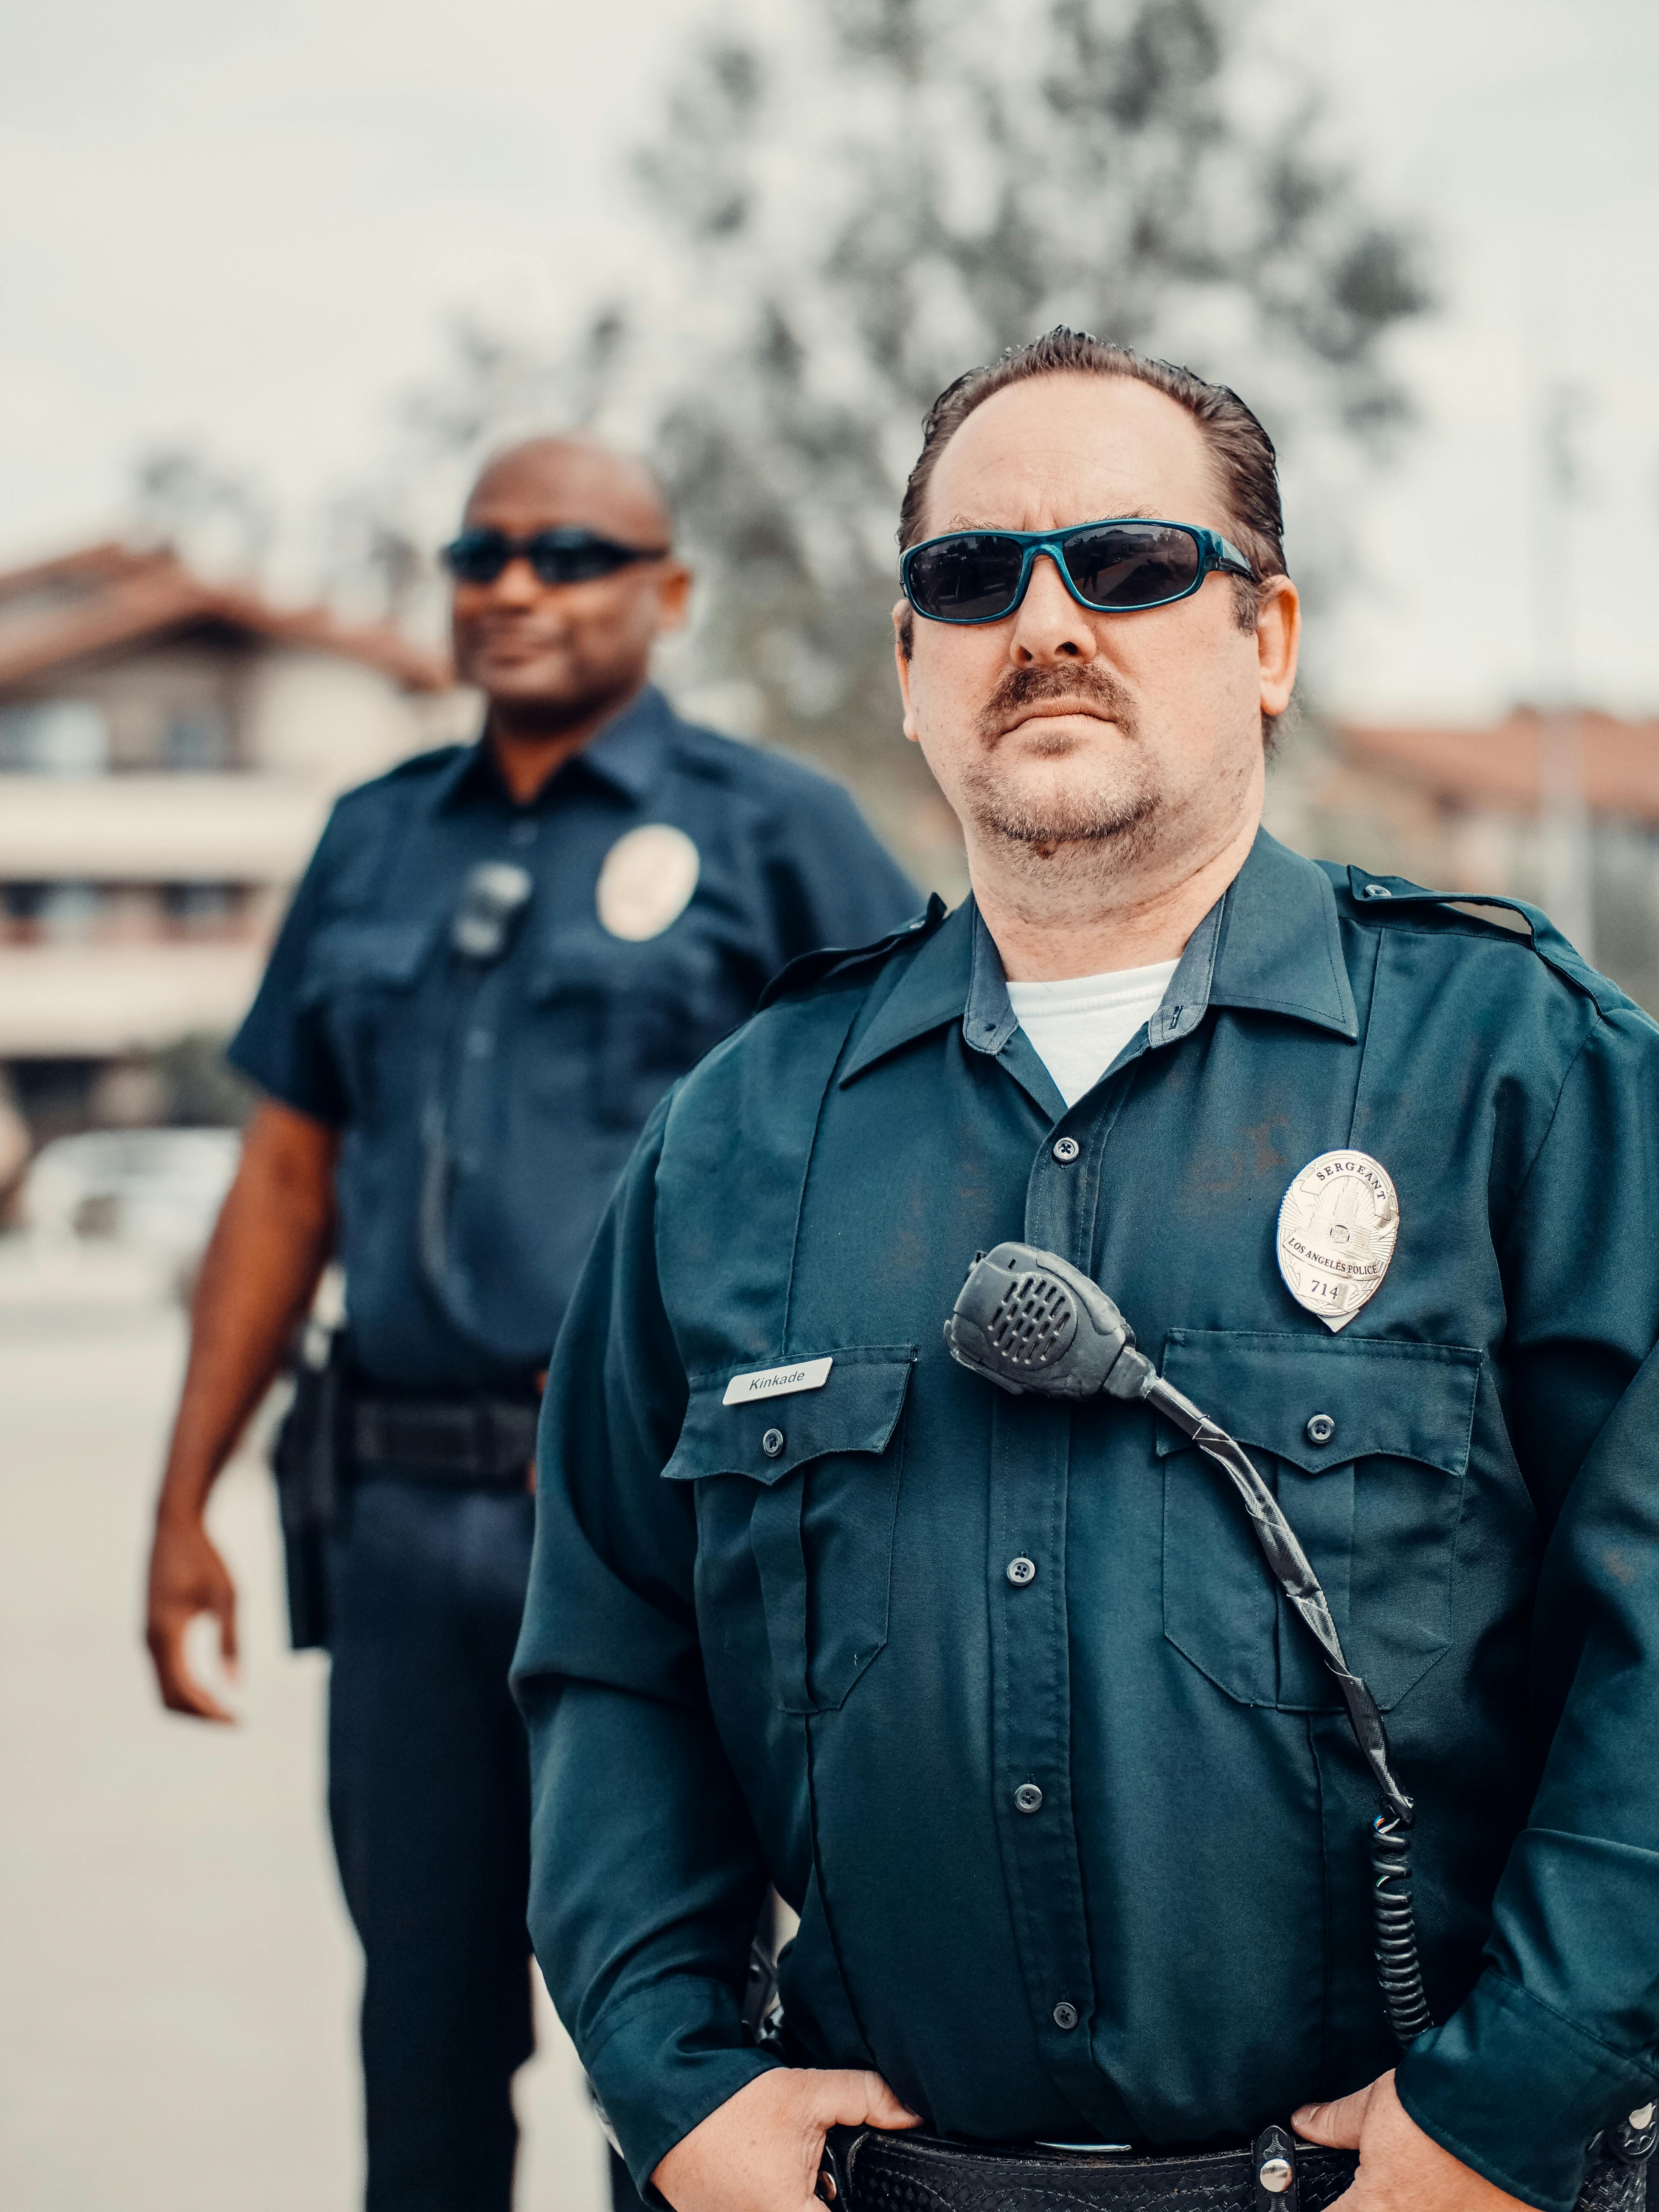 Un policía de aspecto sombrío detrás de un compañero | Fuente: Pexels